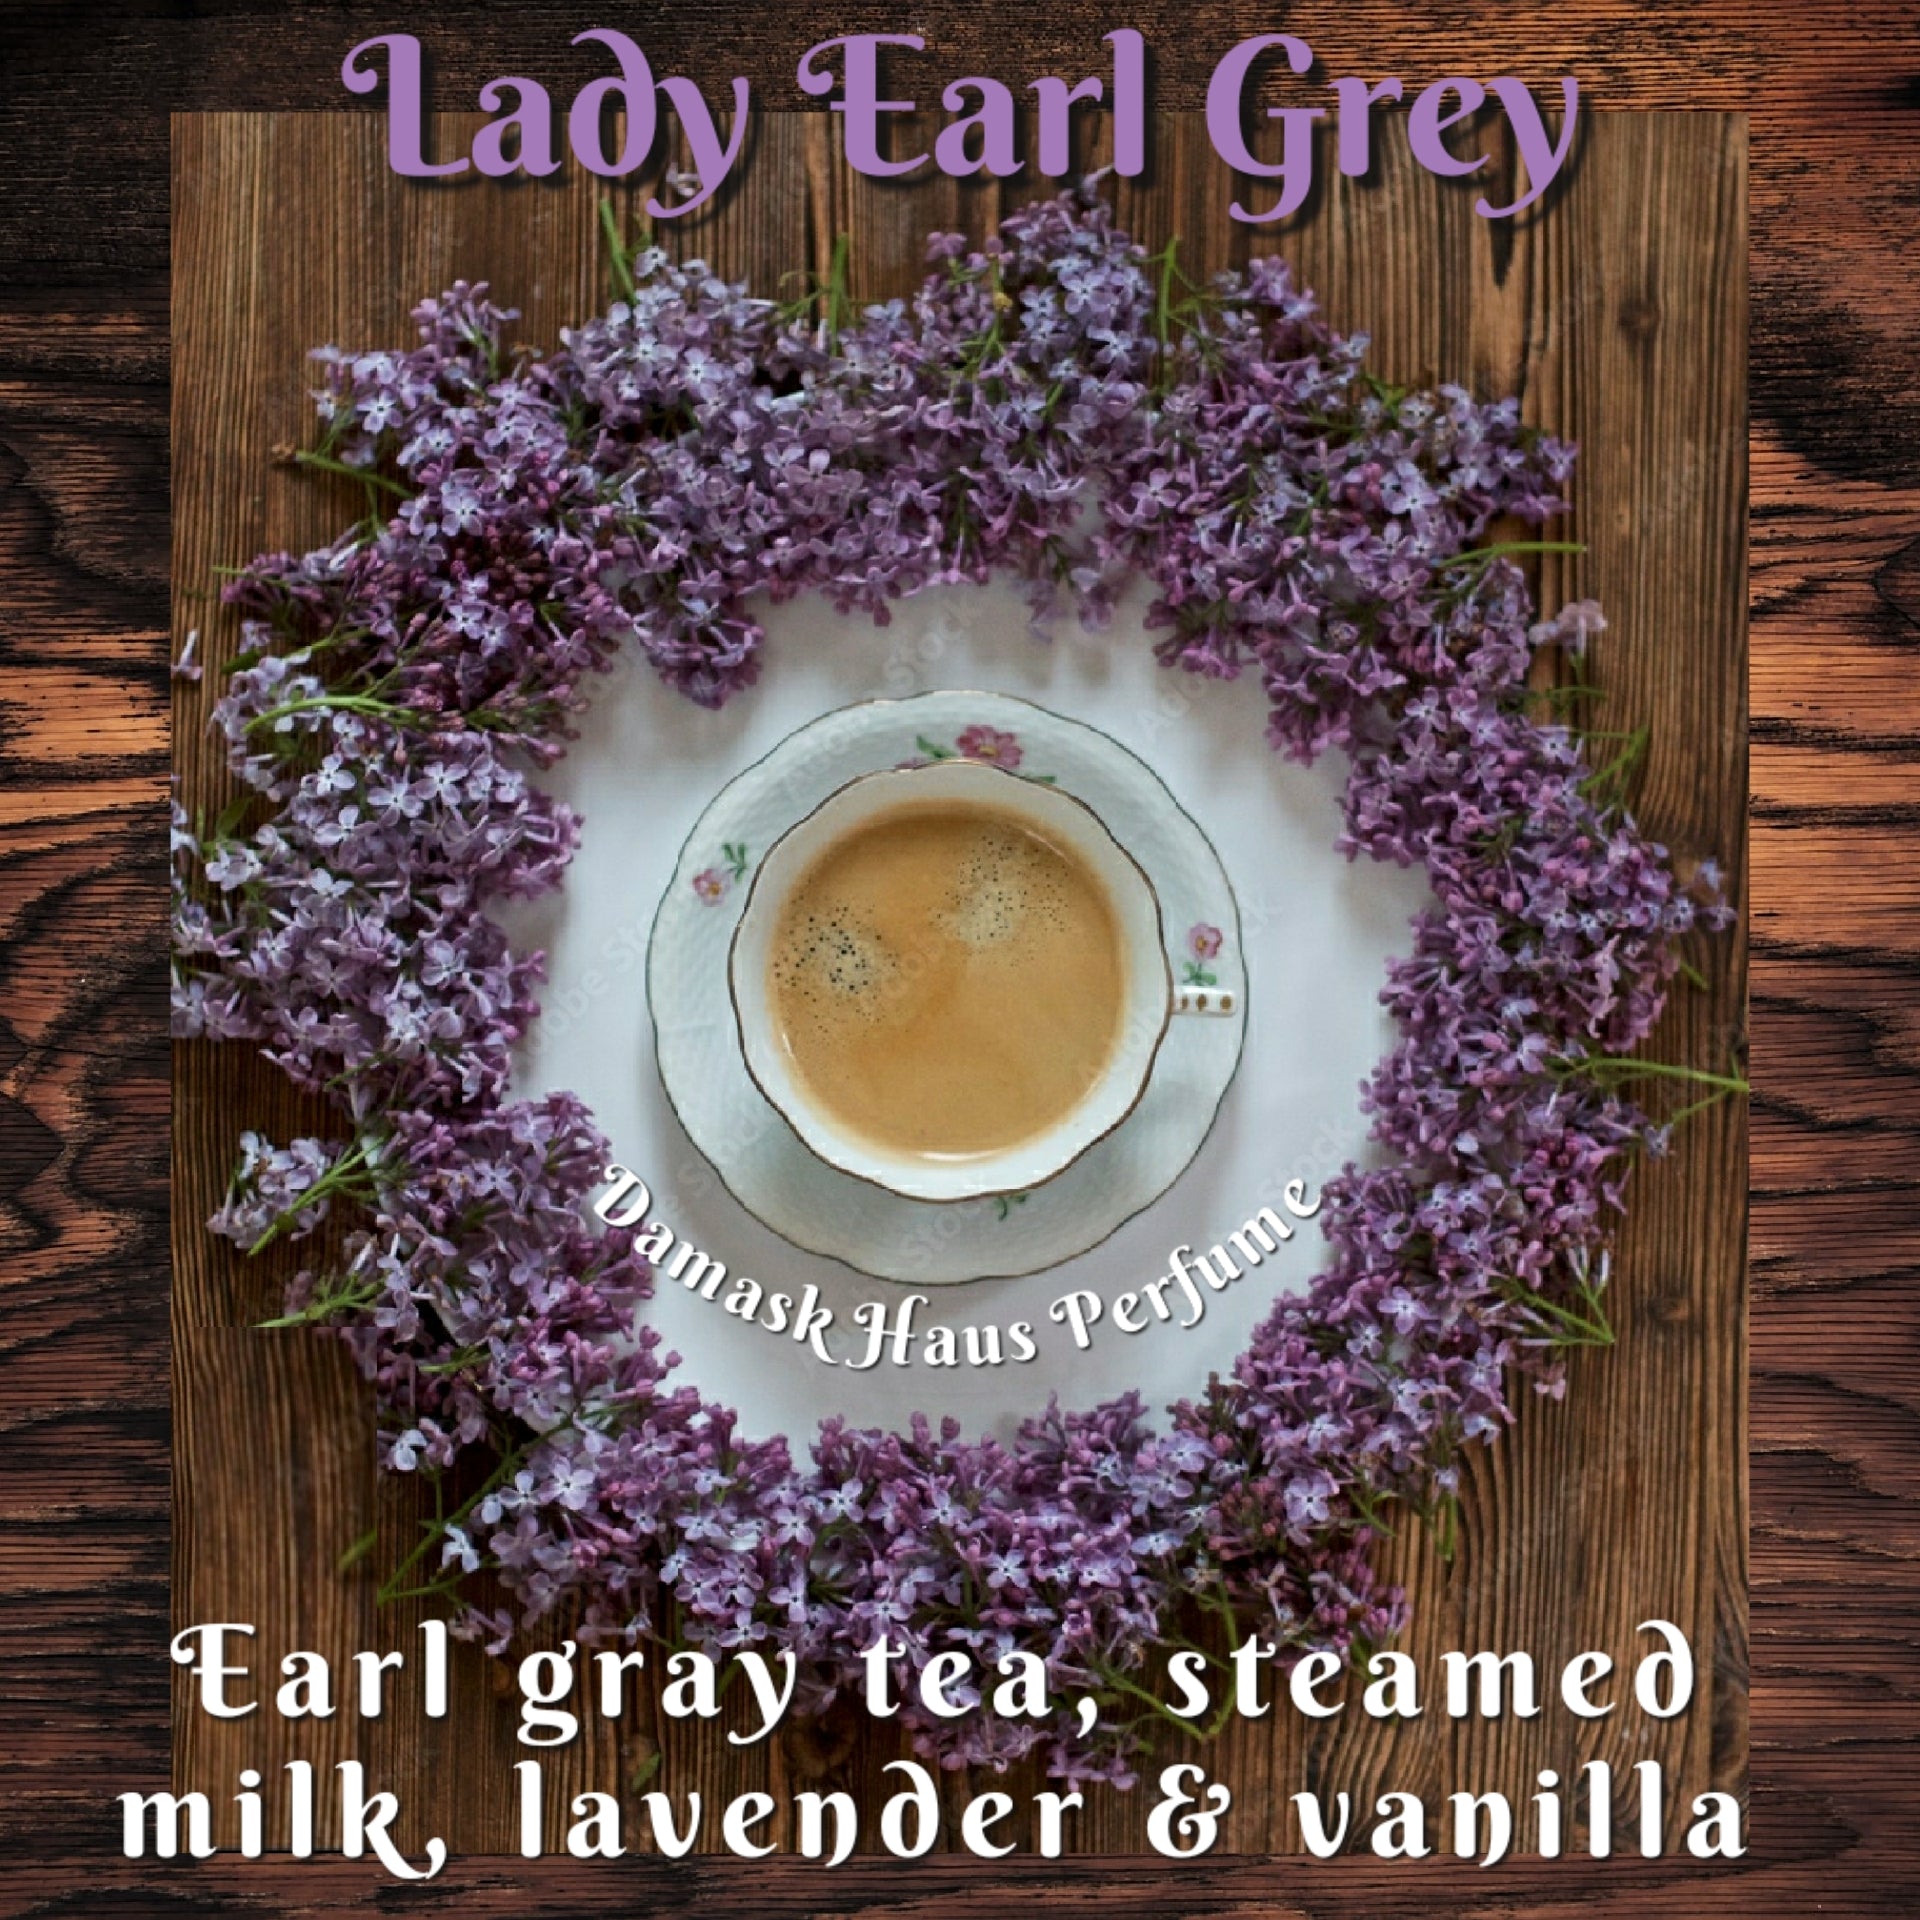 Lady Earl Grey